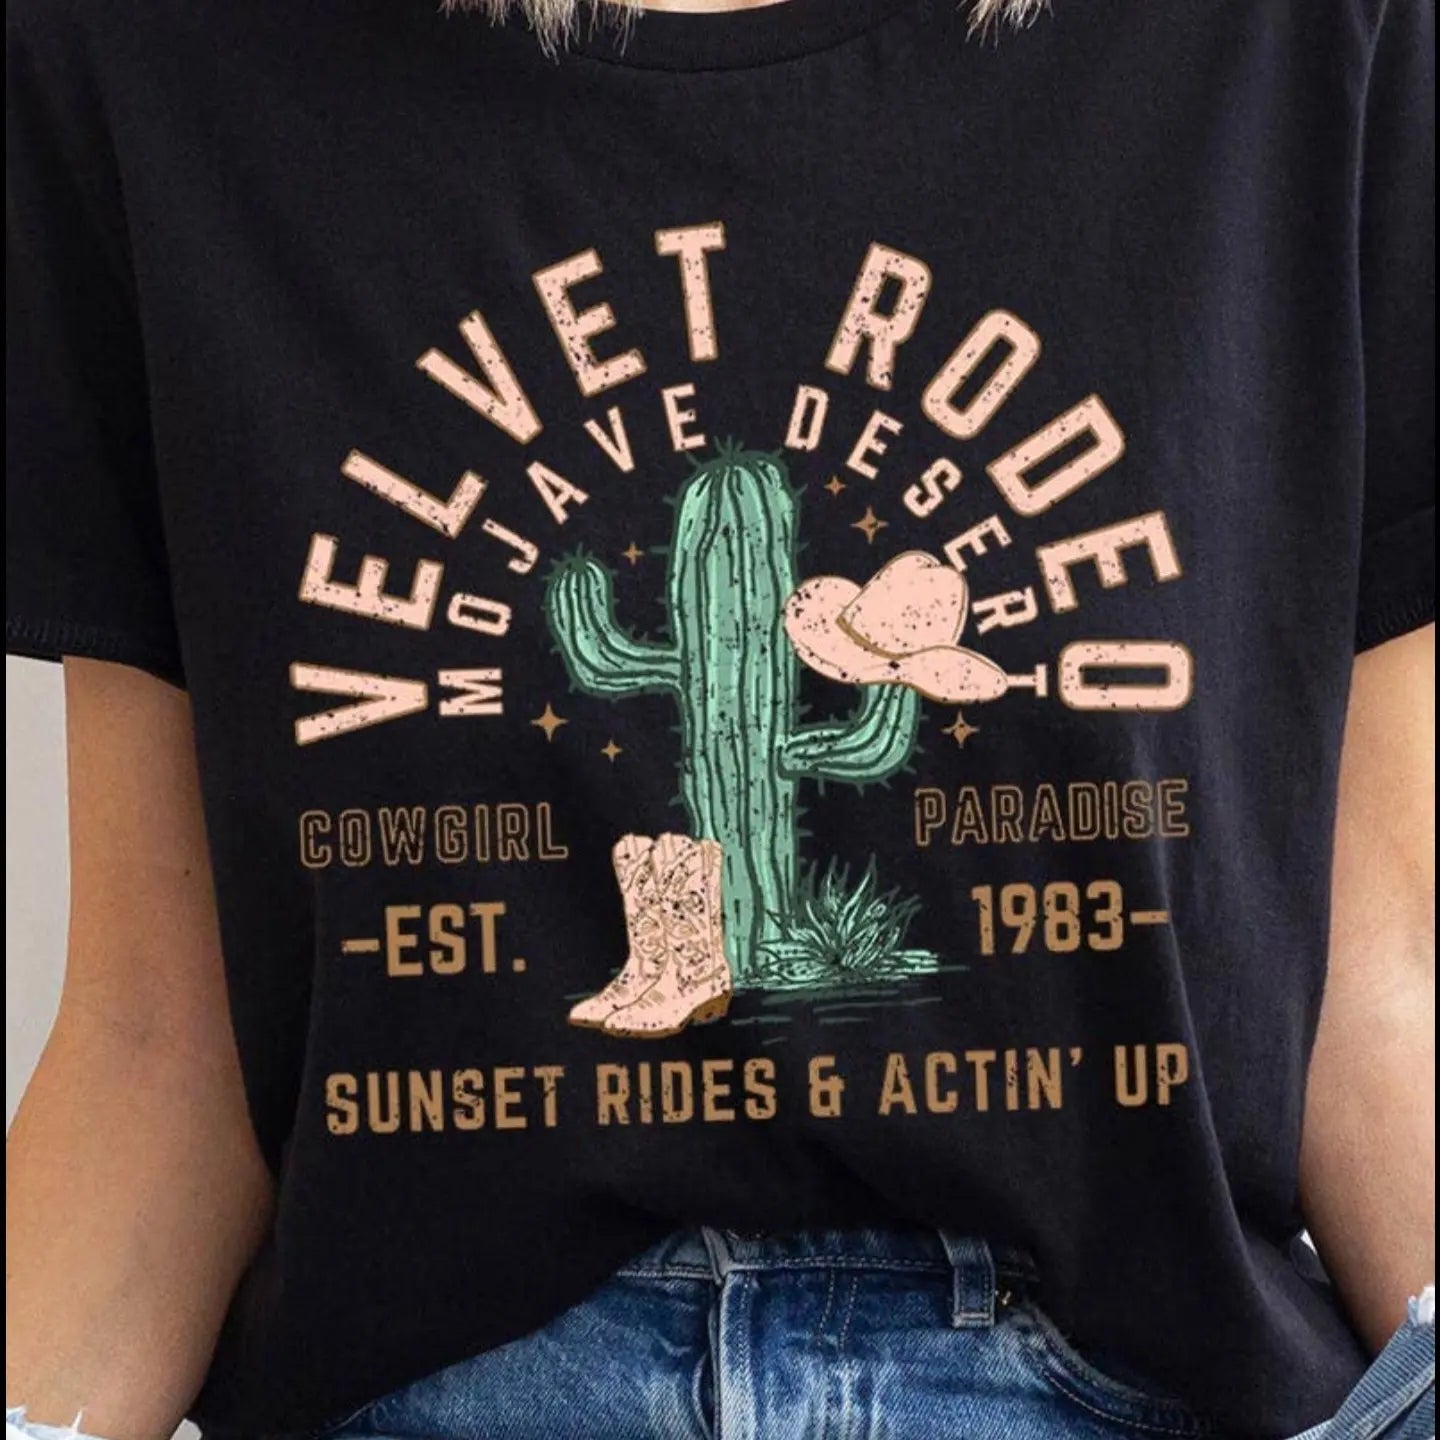 The Velvet Rodeo